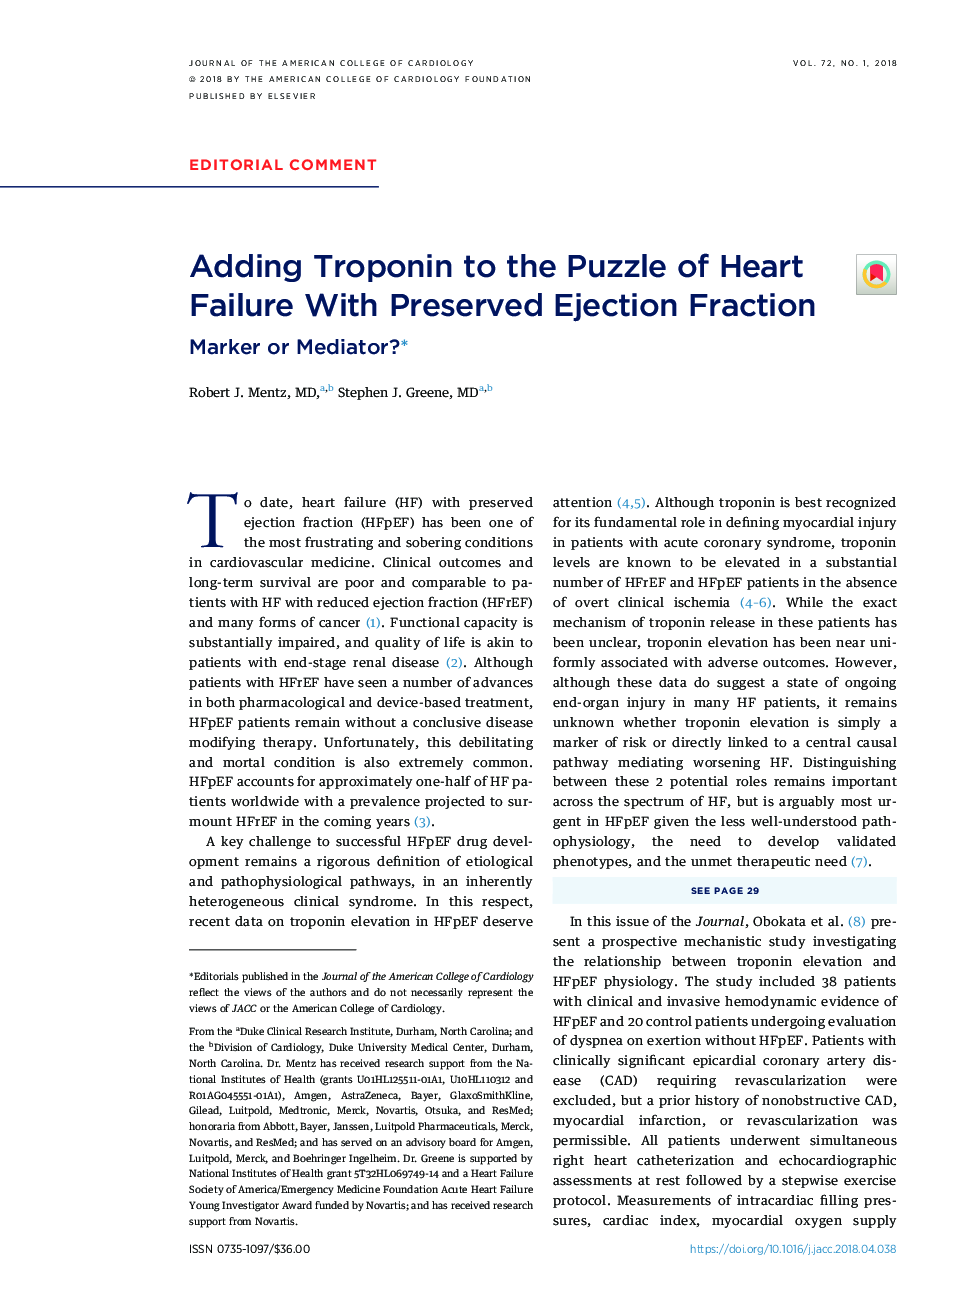 اضافه کردن تروپونین به پازل نارسایی قلب با تخریب حفظ شده است 